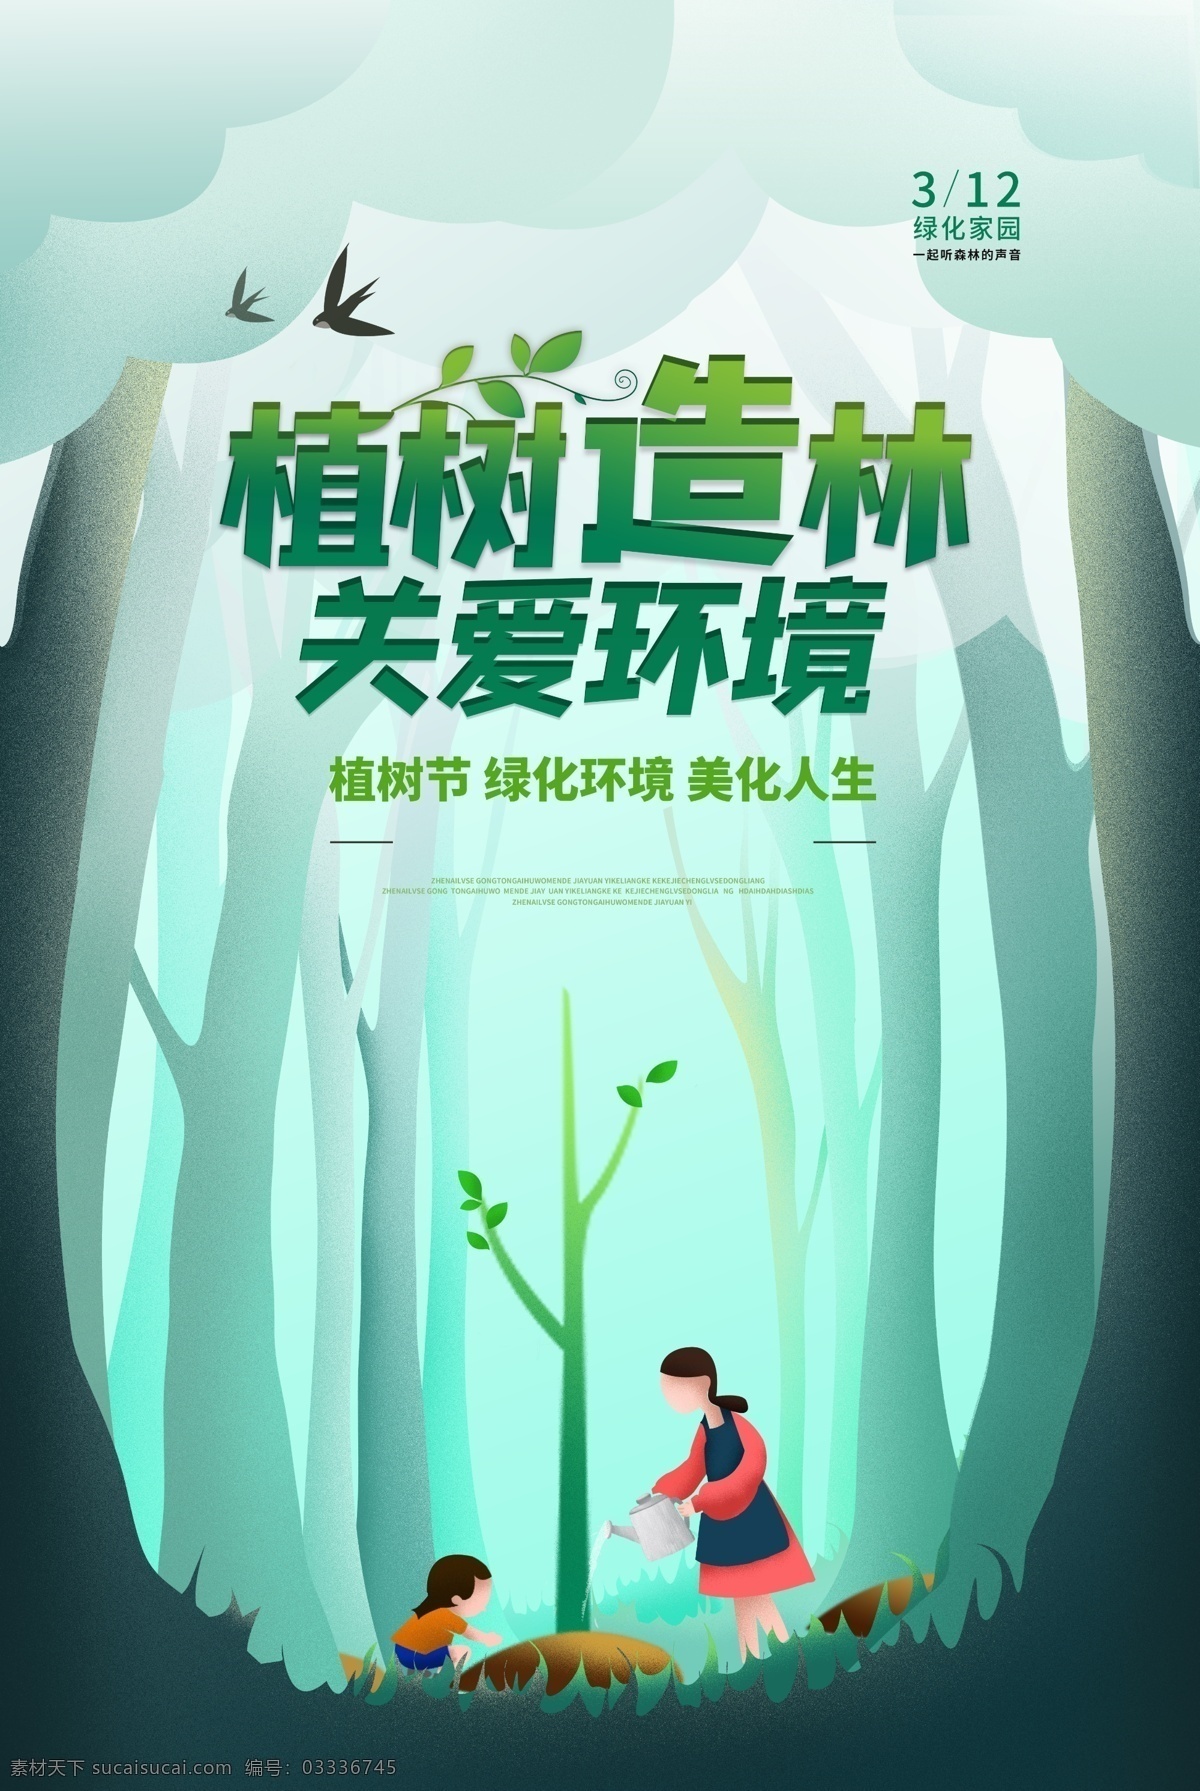 植树节 传统节日 活动 宣传海报 素材图片 传统 节日 宣传 海报